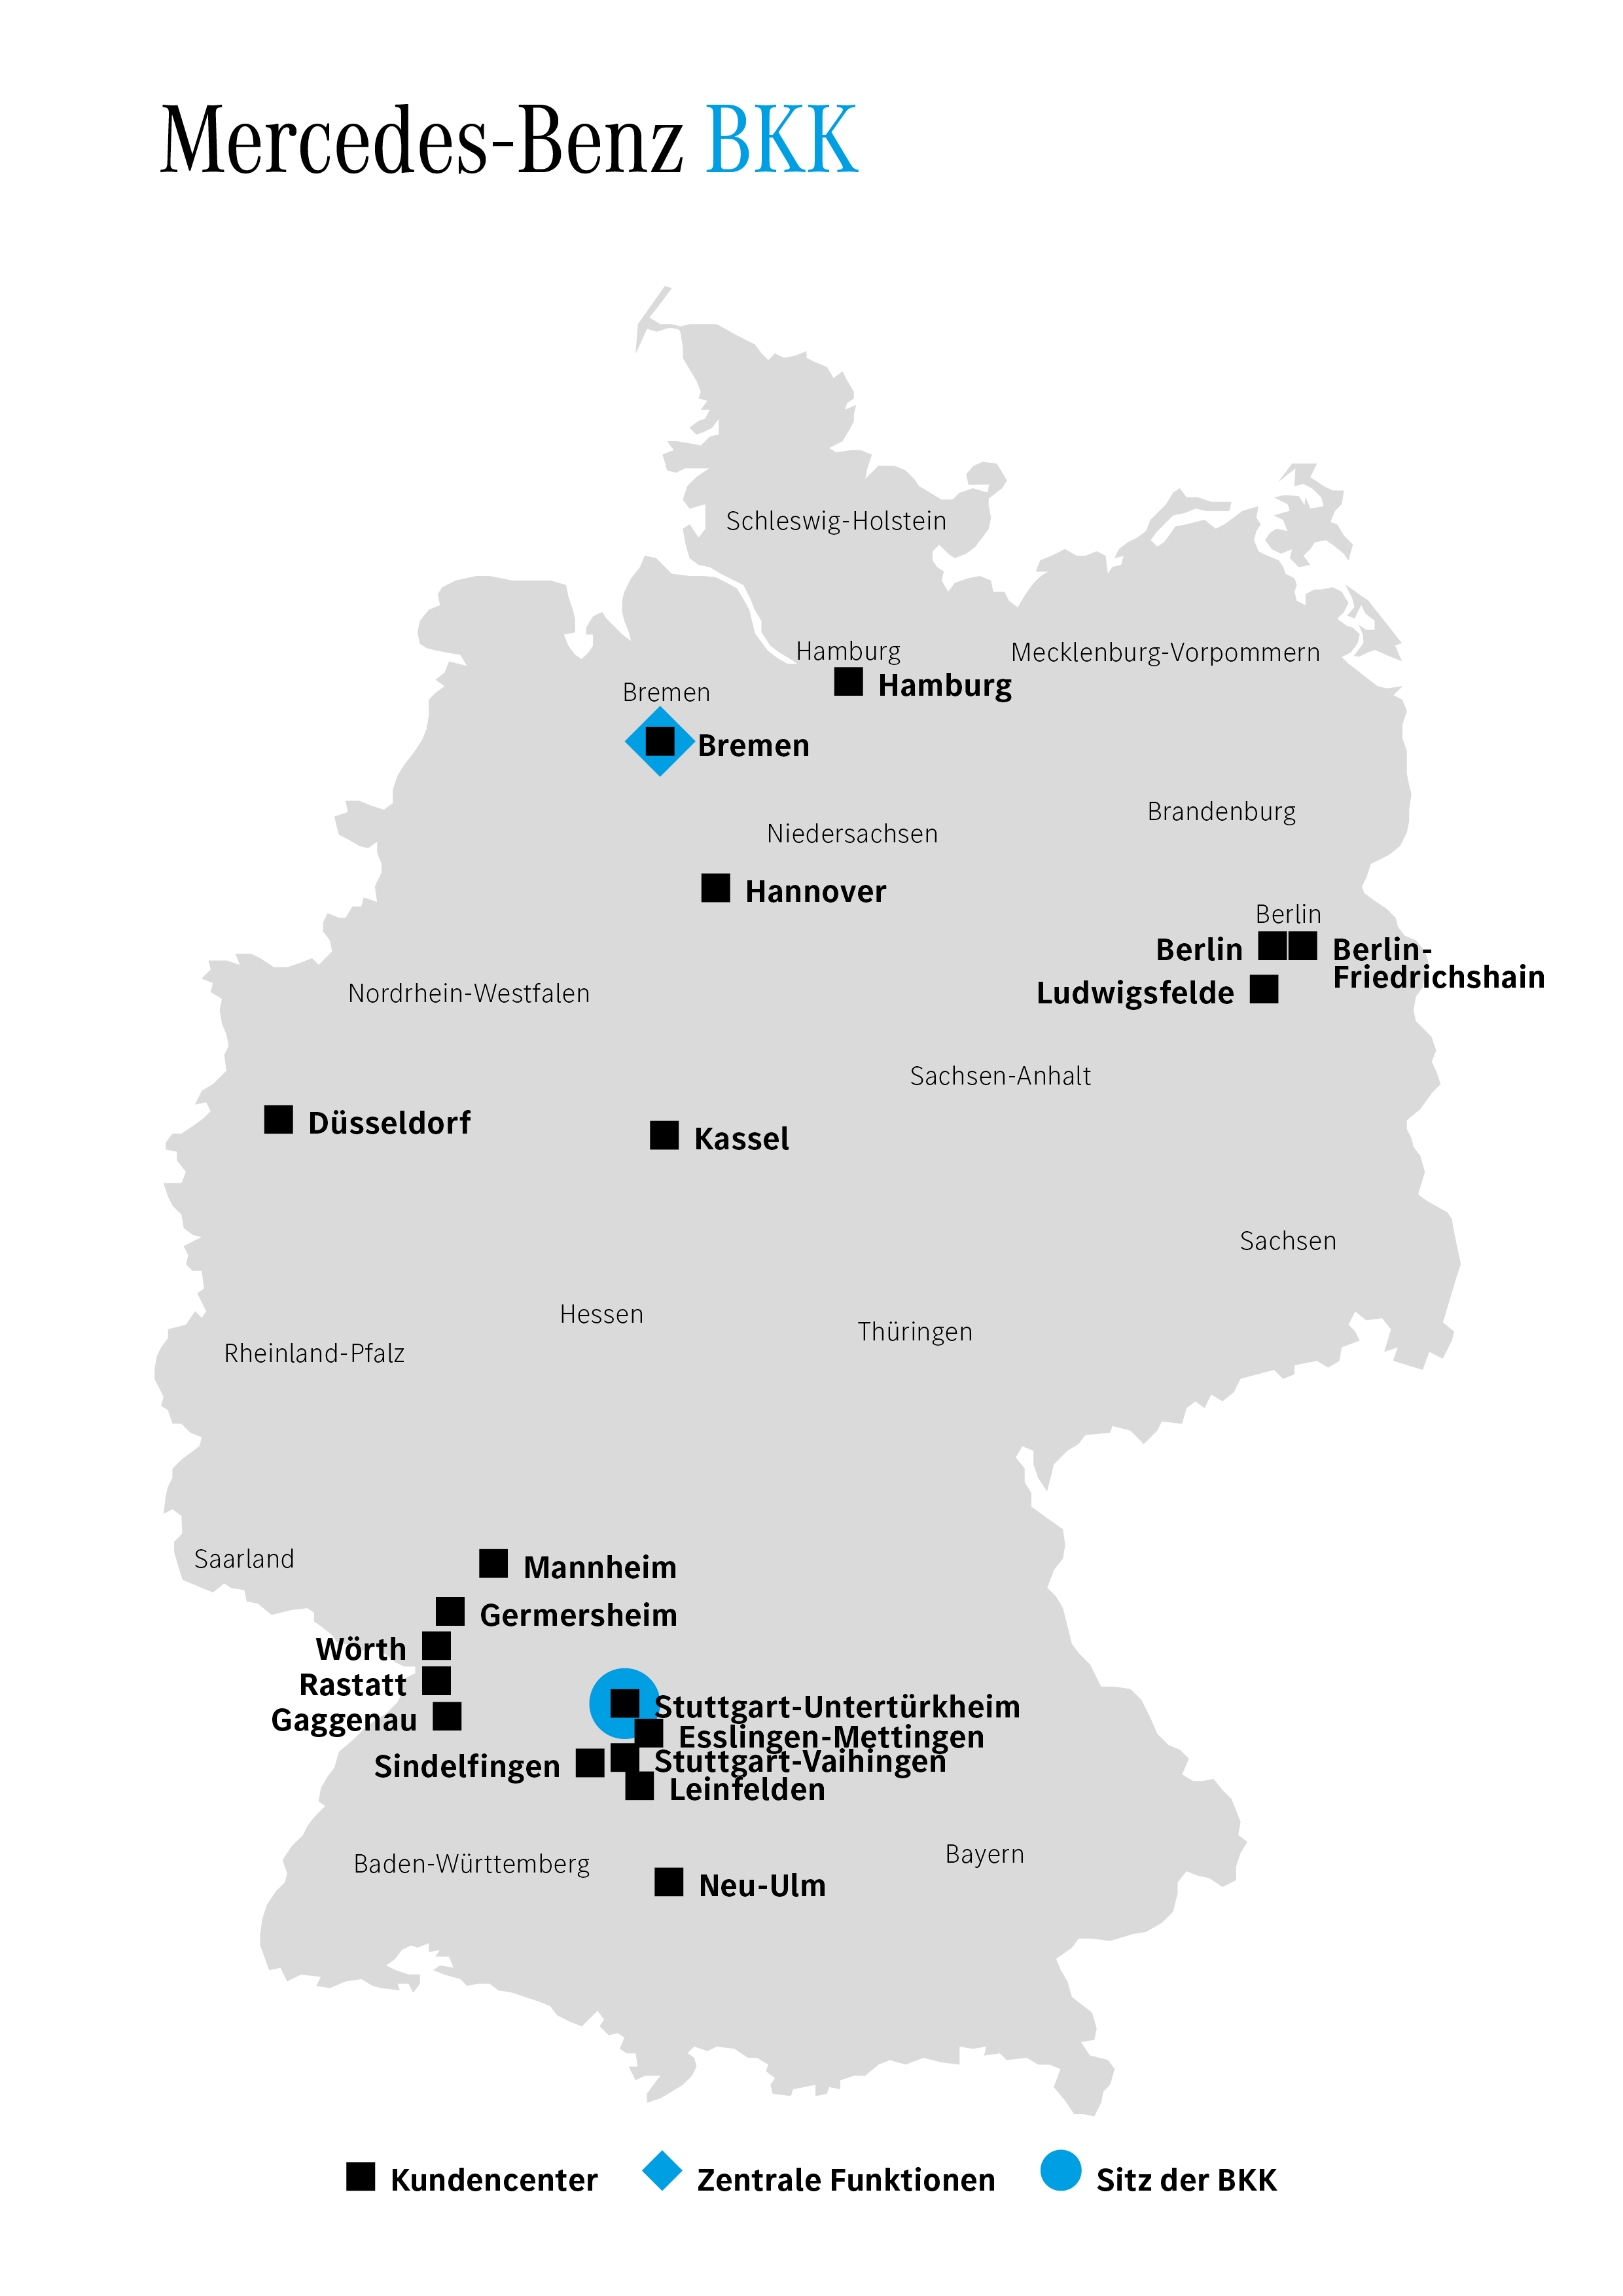 Deutschlandkarte mit Kundencentern der Mercedes-Benz BKK